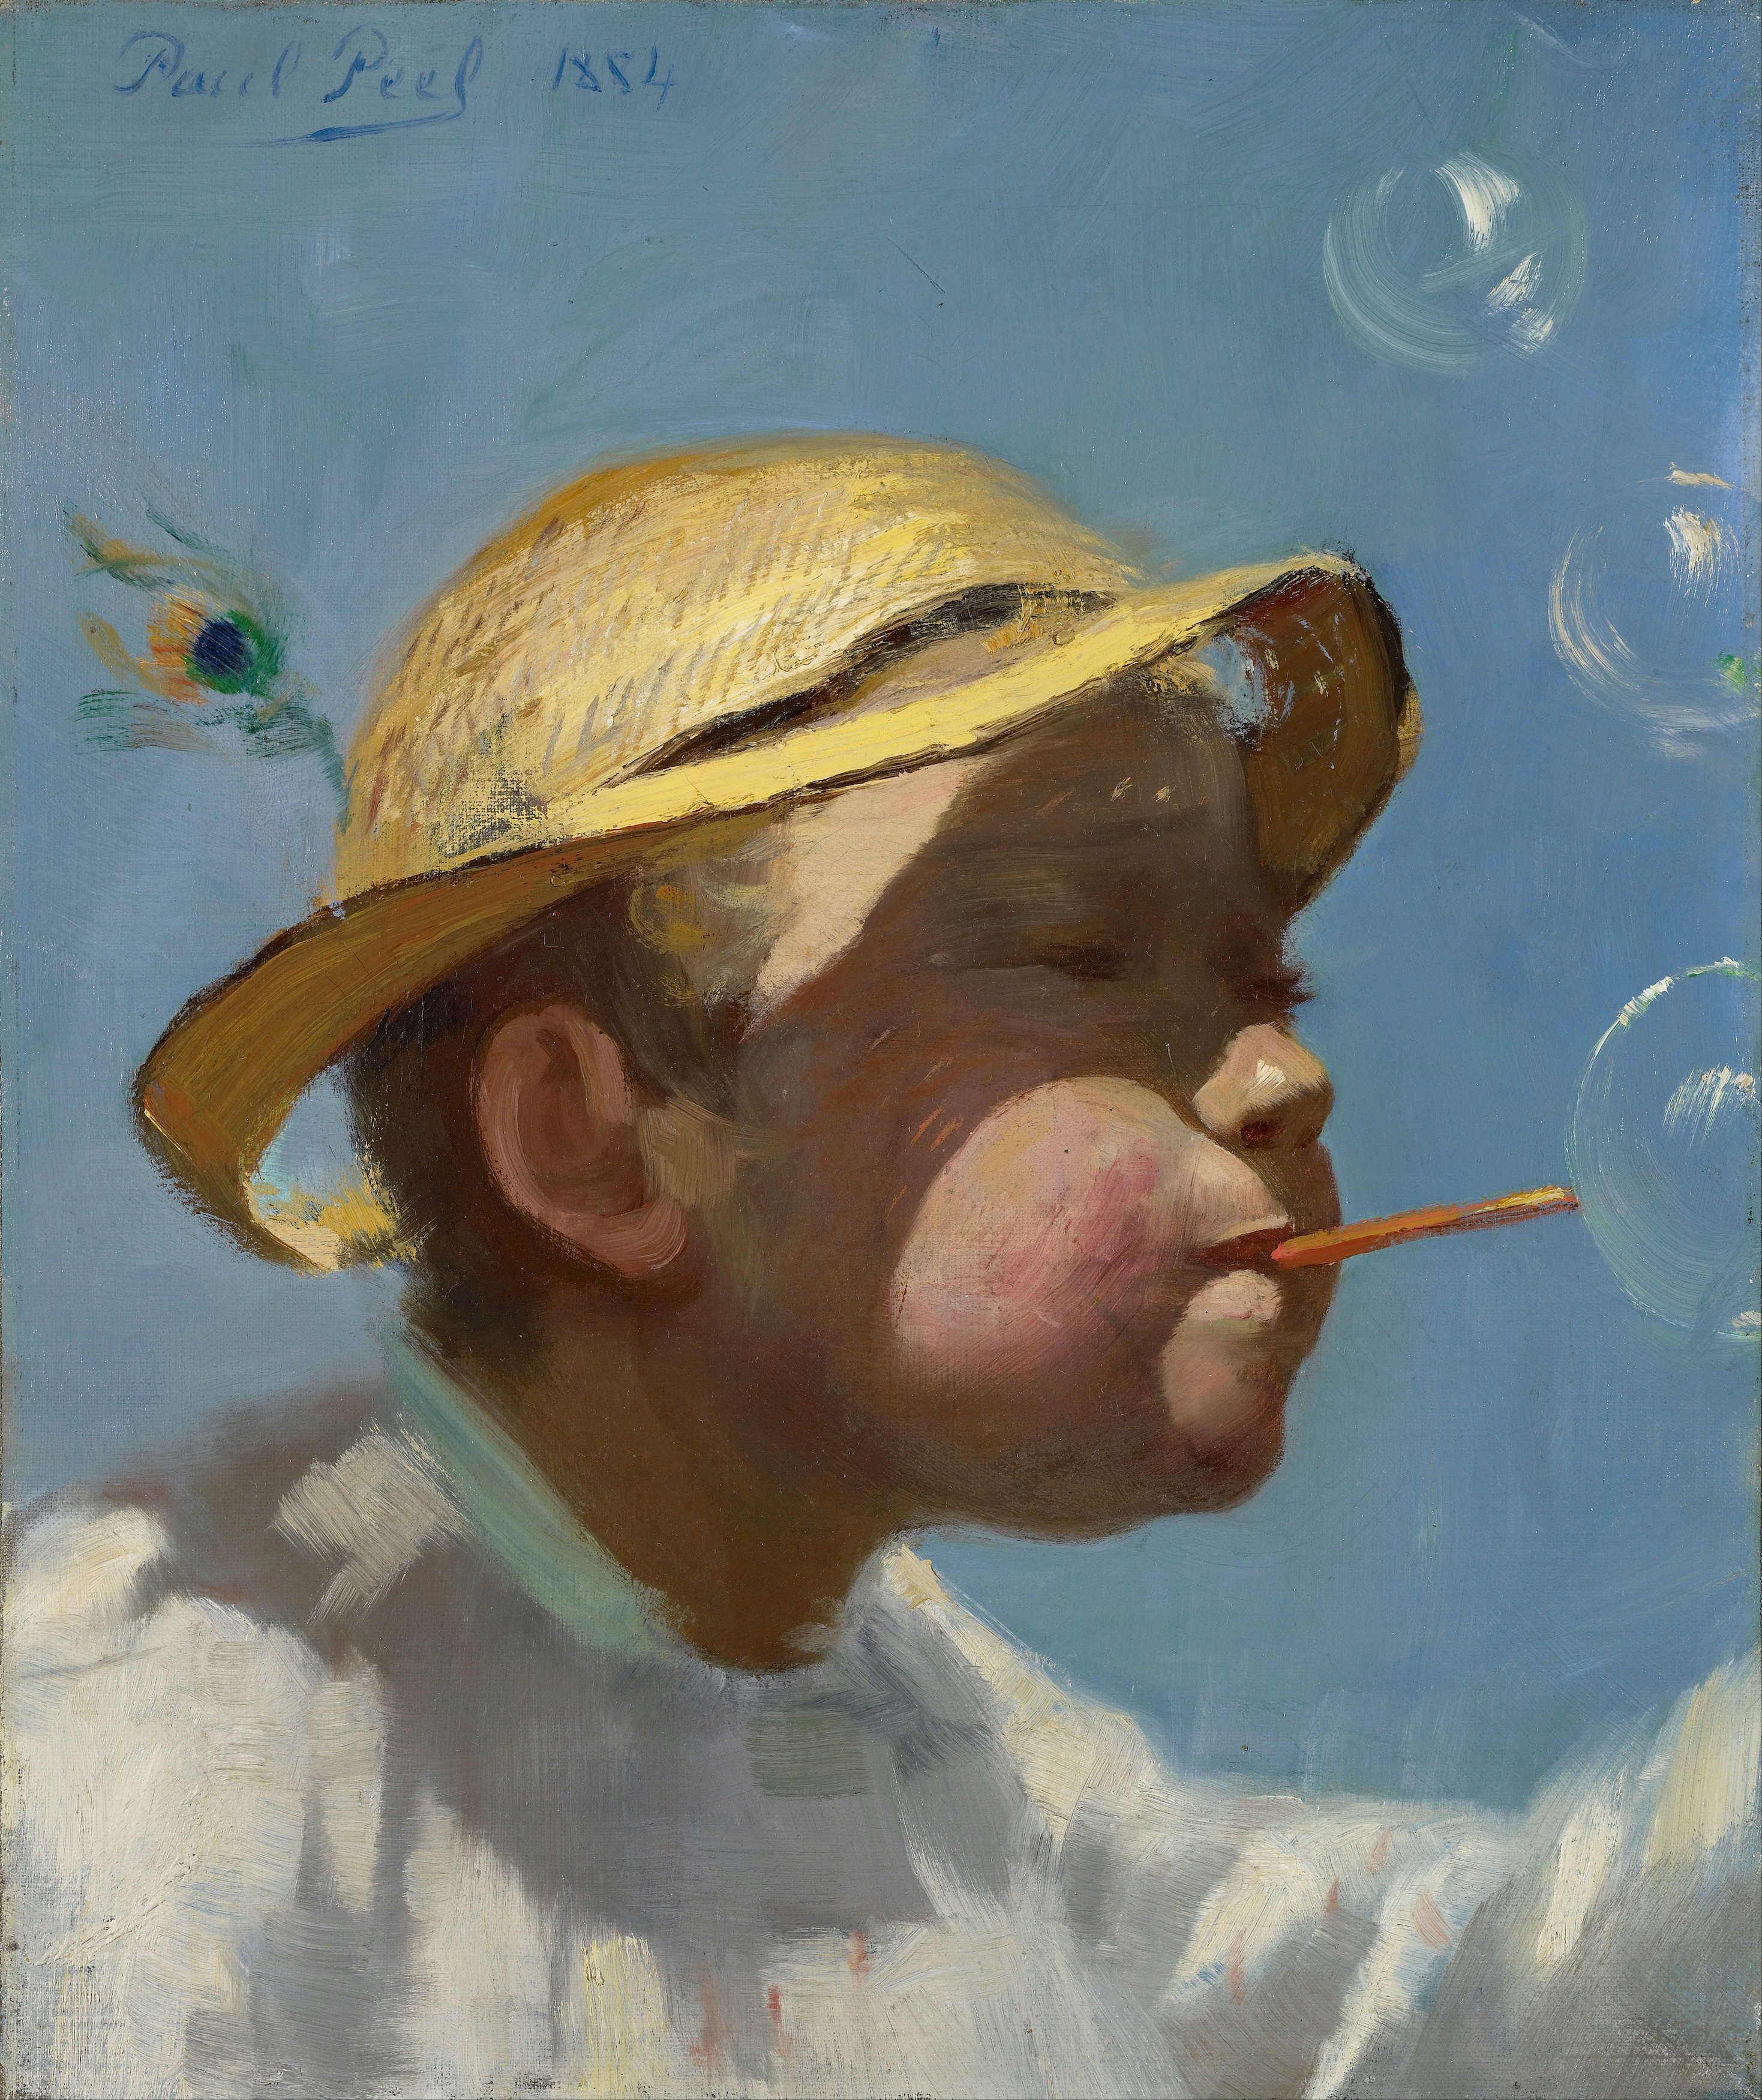 Мальчик, пускающий мыльные пузыри by Paul Peel - 1884 - 35.9 x 43.2 см 